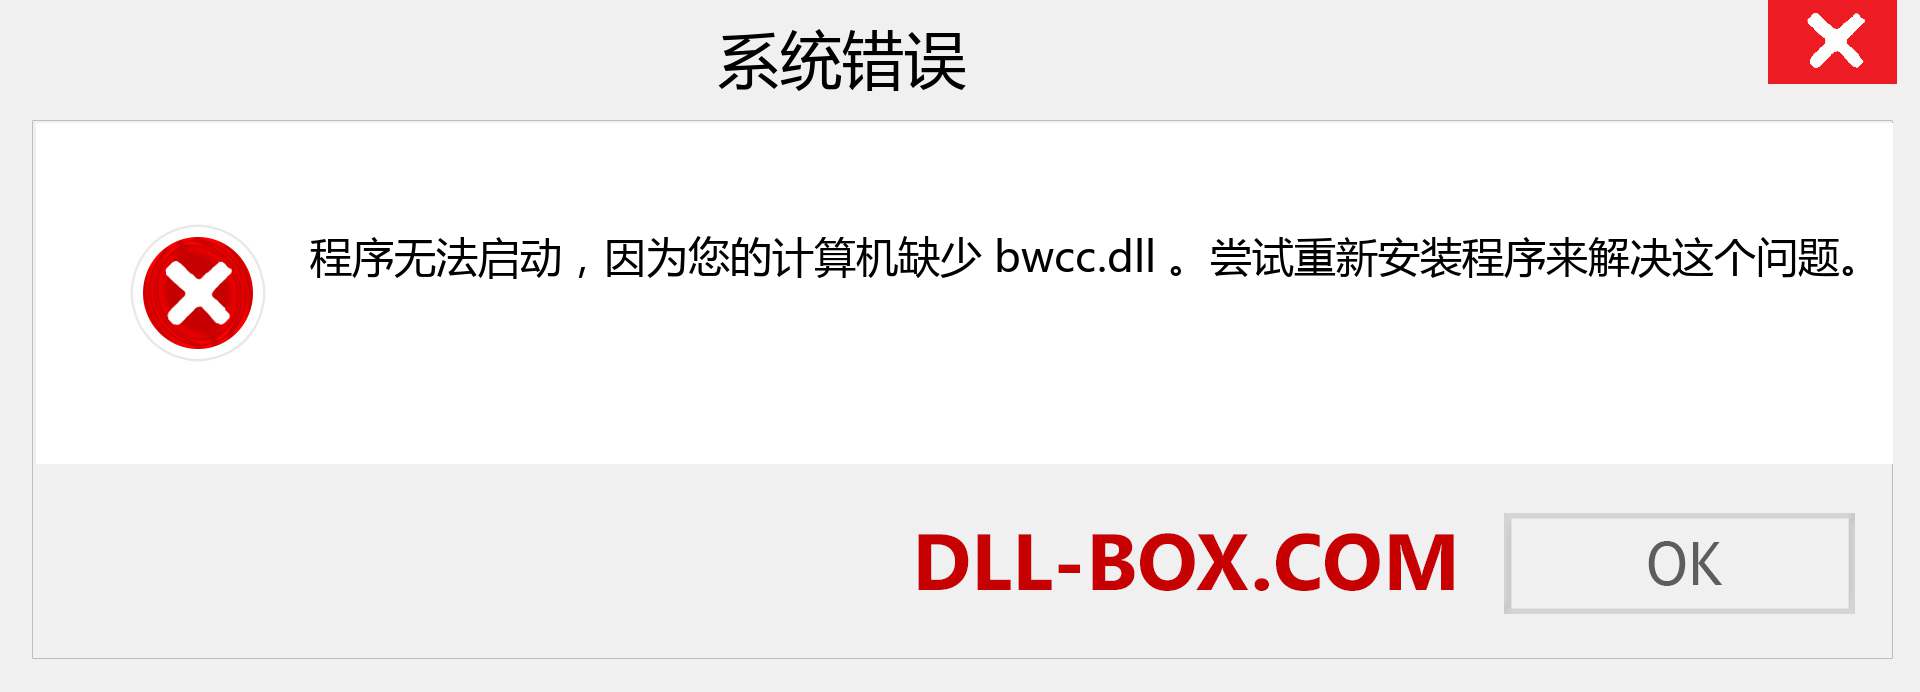 bwcc.dll 文件丢失？。 适用于 Windows 7、8、10 的下载 - 修复 Windows、照片、图像上的 bwcc dll 丢失错误